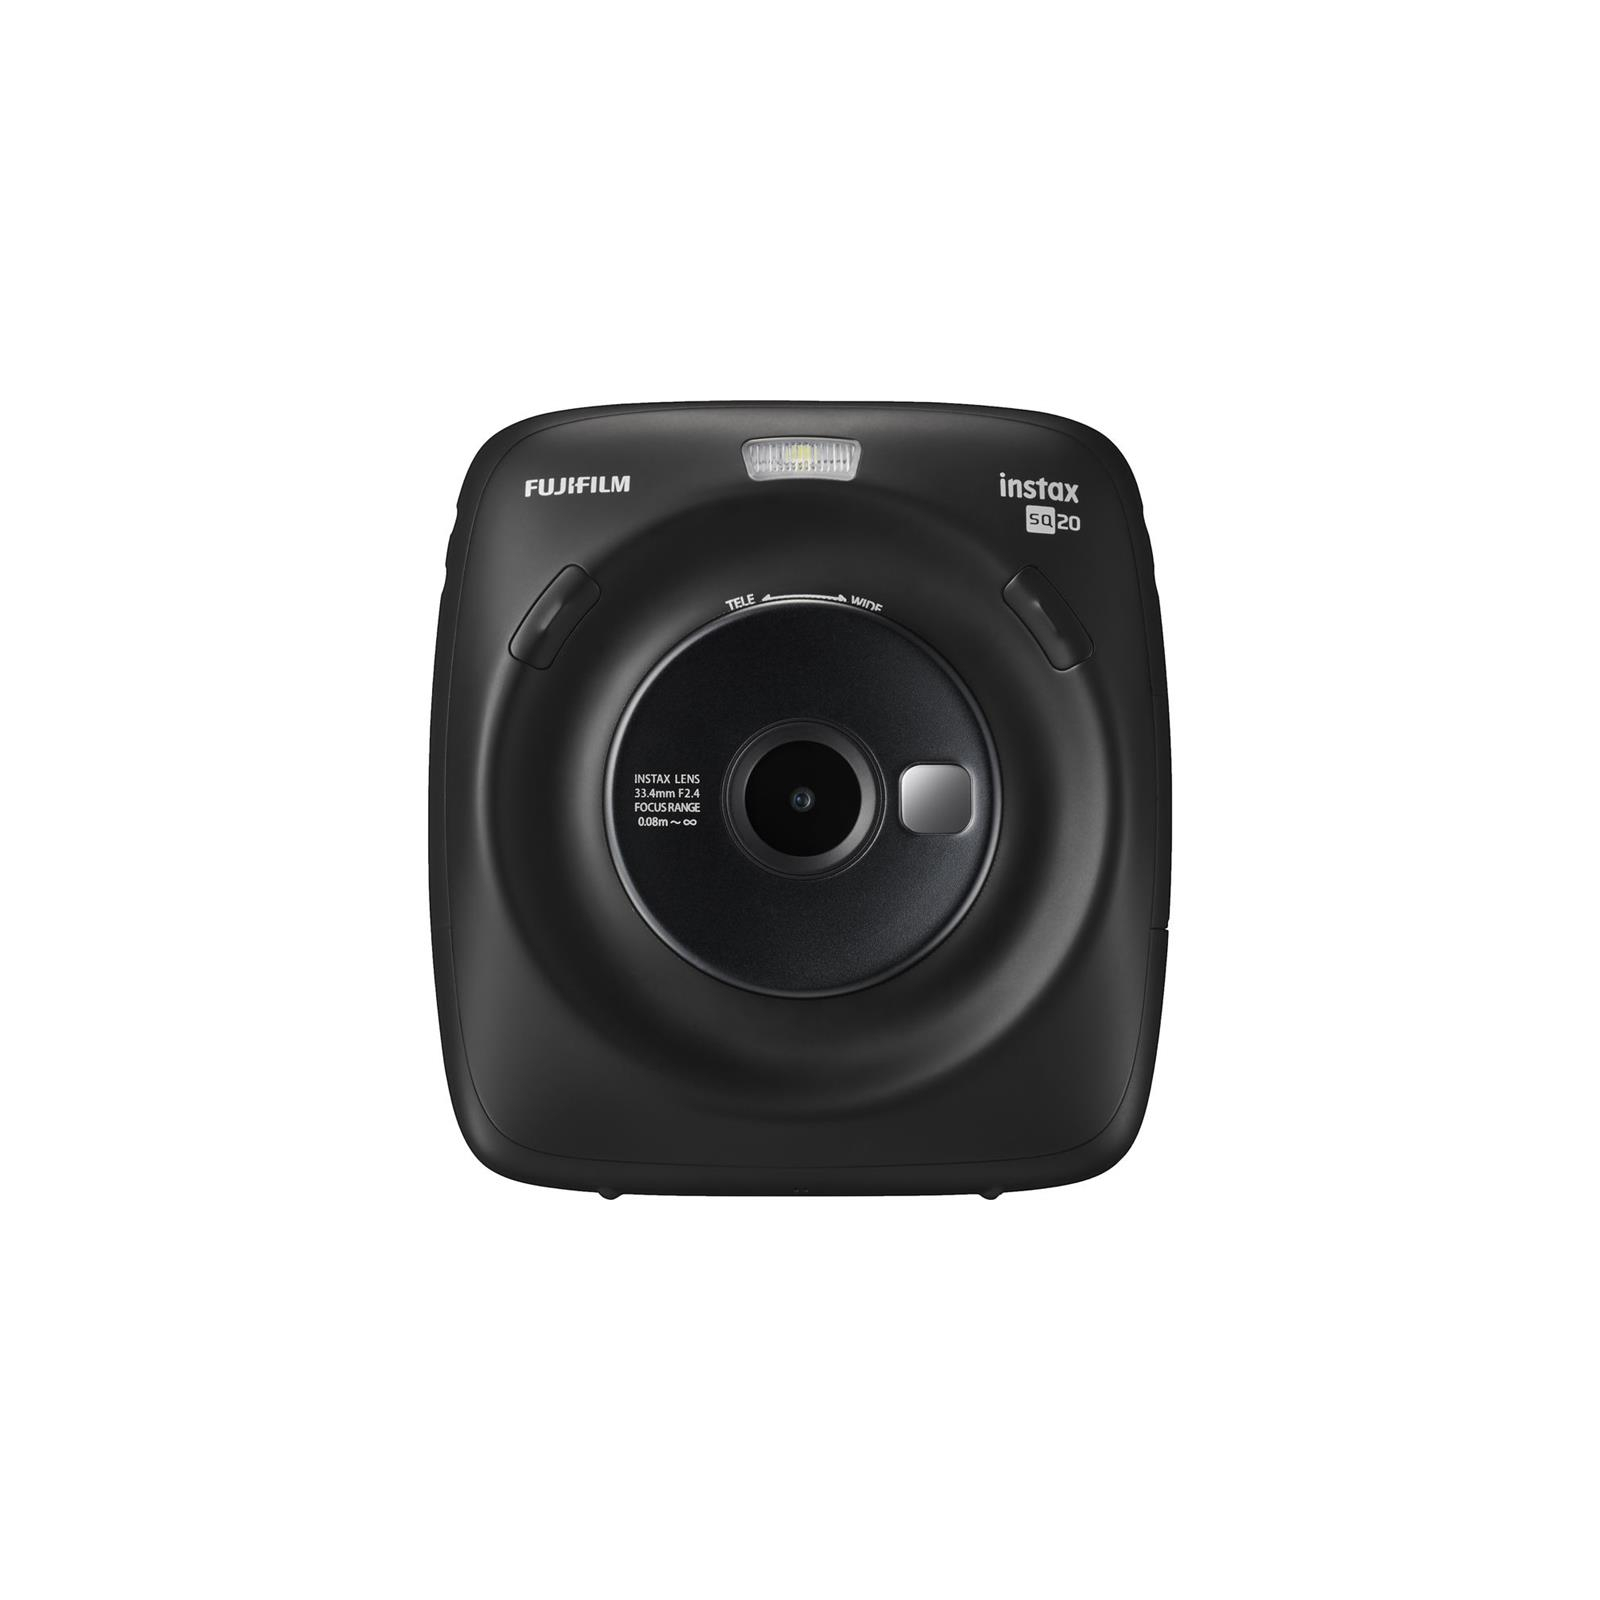 Камера миттєвого друку Fujifilm INSTAX Mini SQ20 Black (16603206)